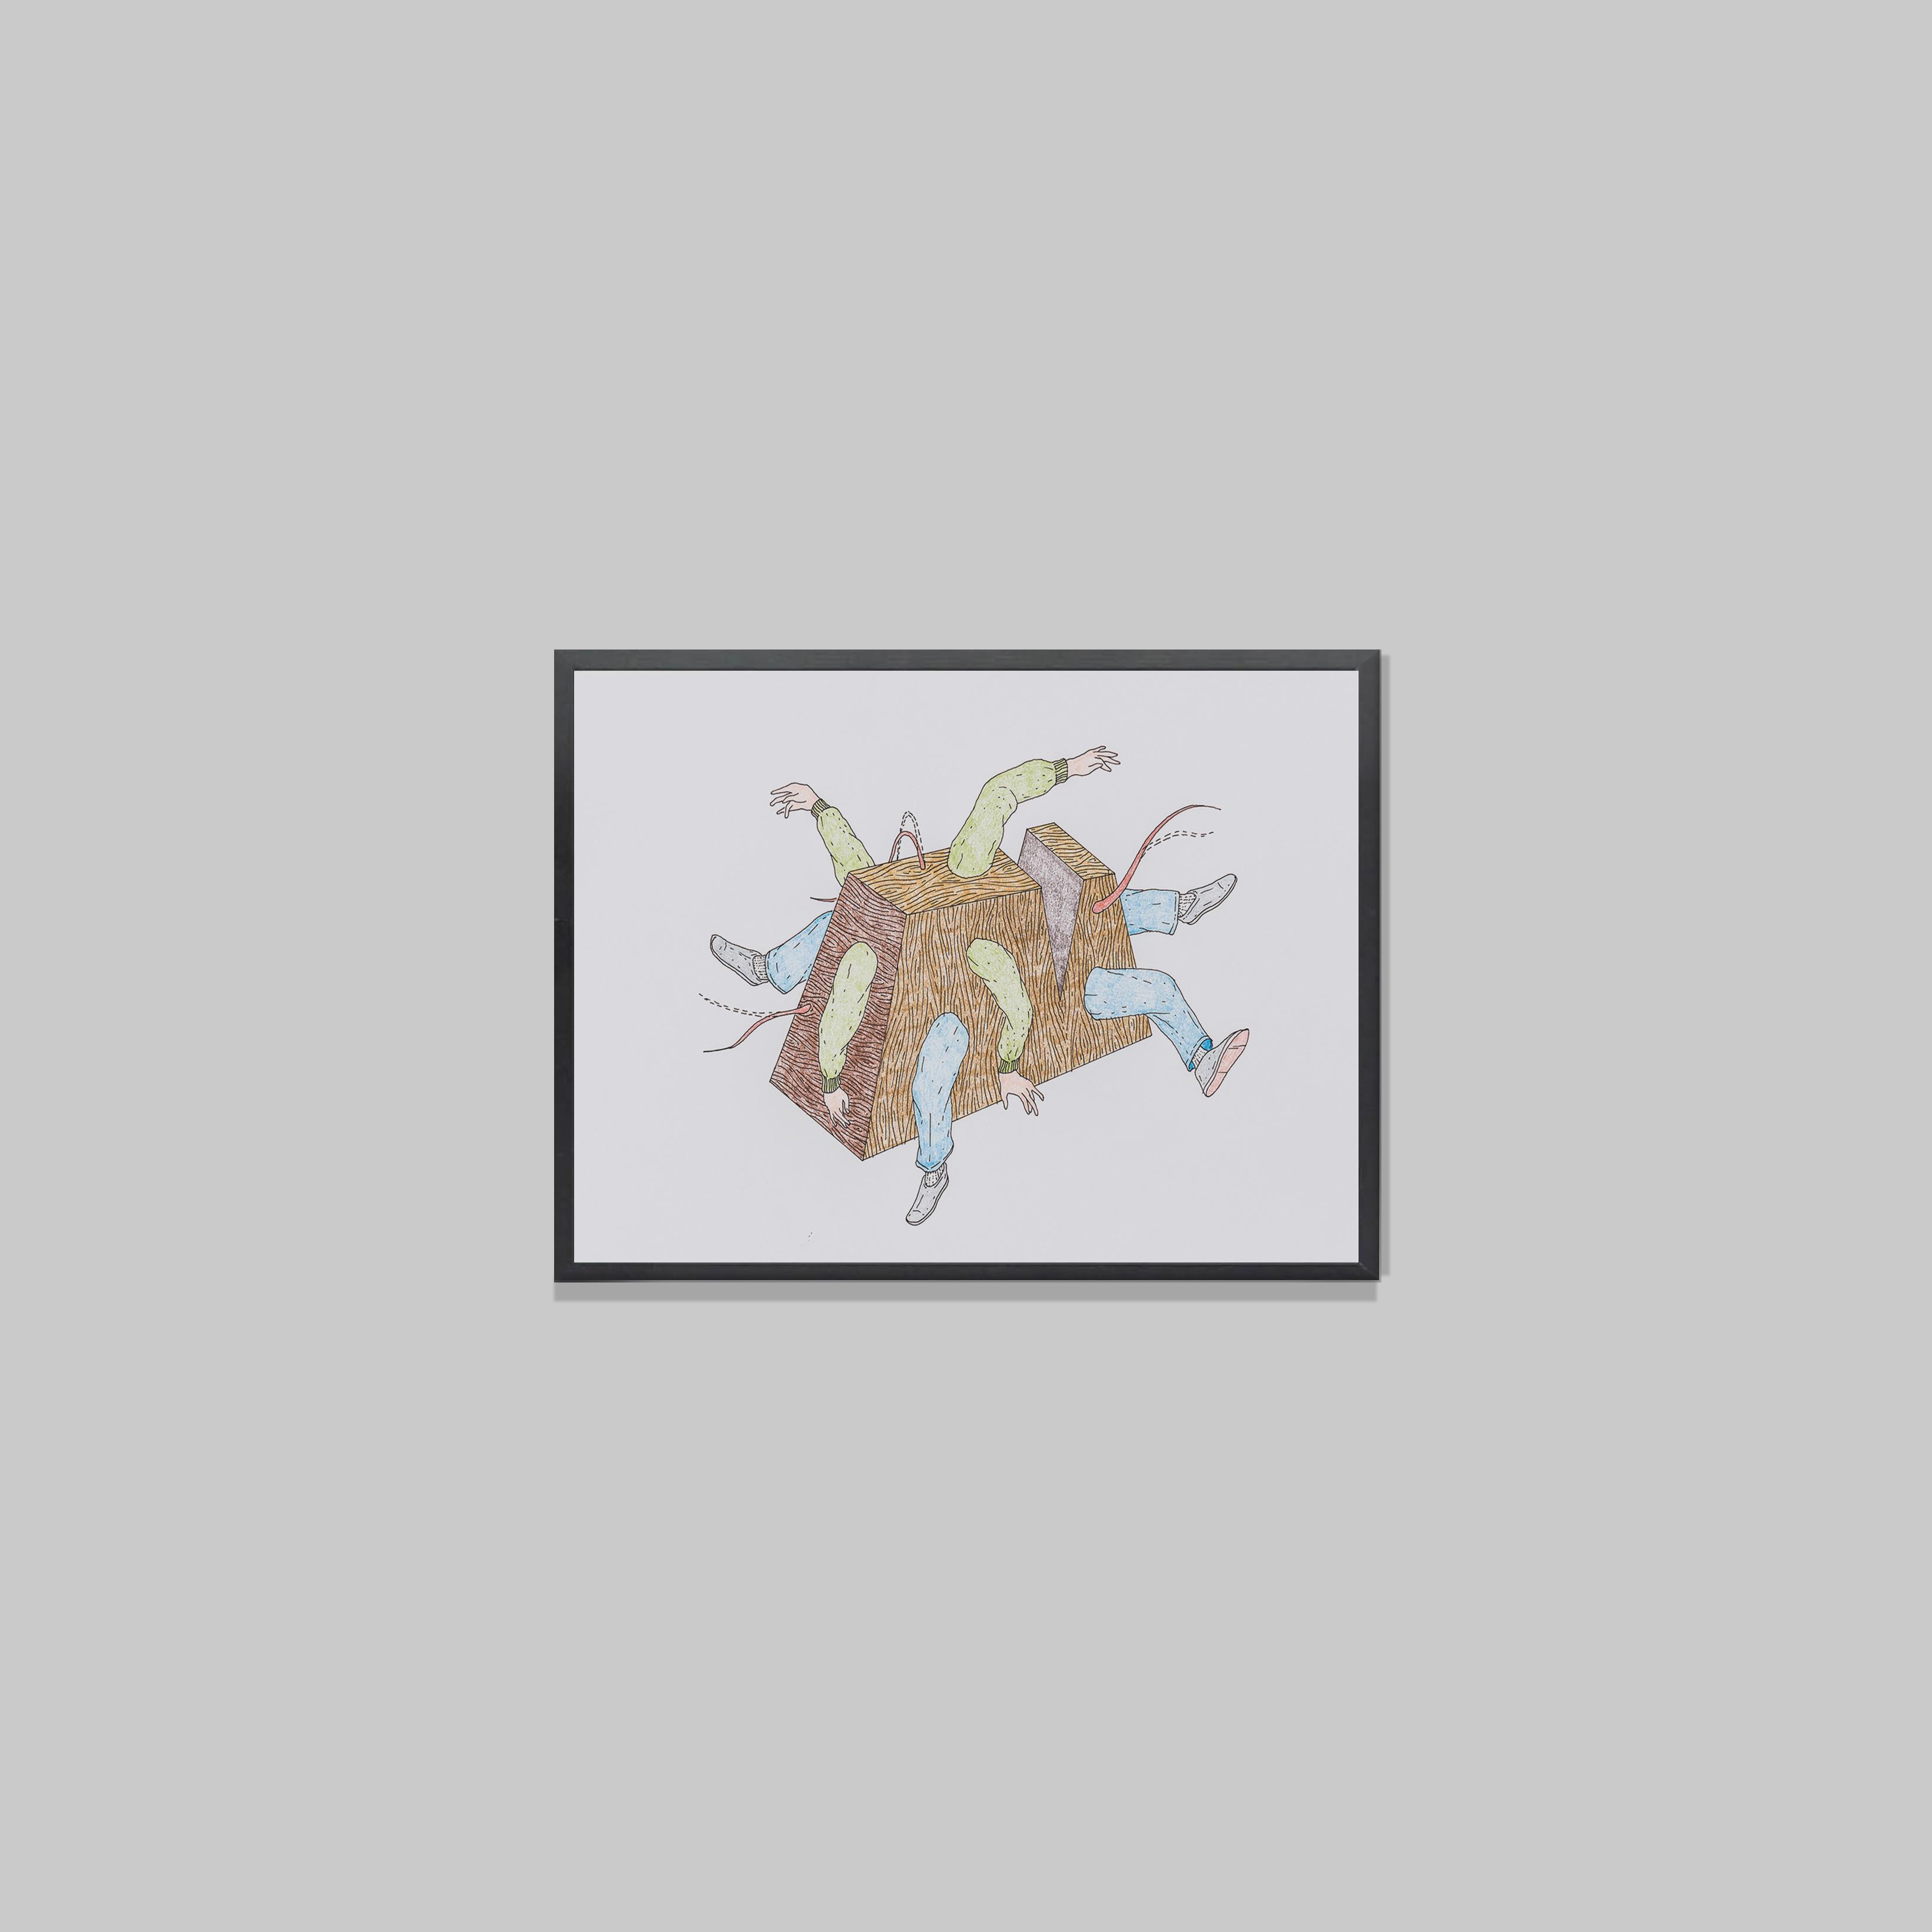 Martin Lord
Octopus, 2010
Encre et crayon de couleur sur papier	
21 x 30 cm